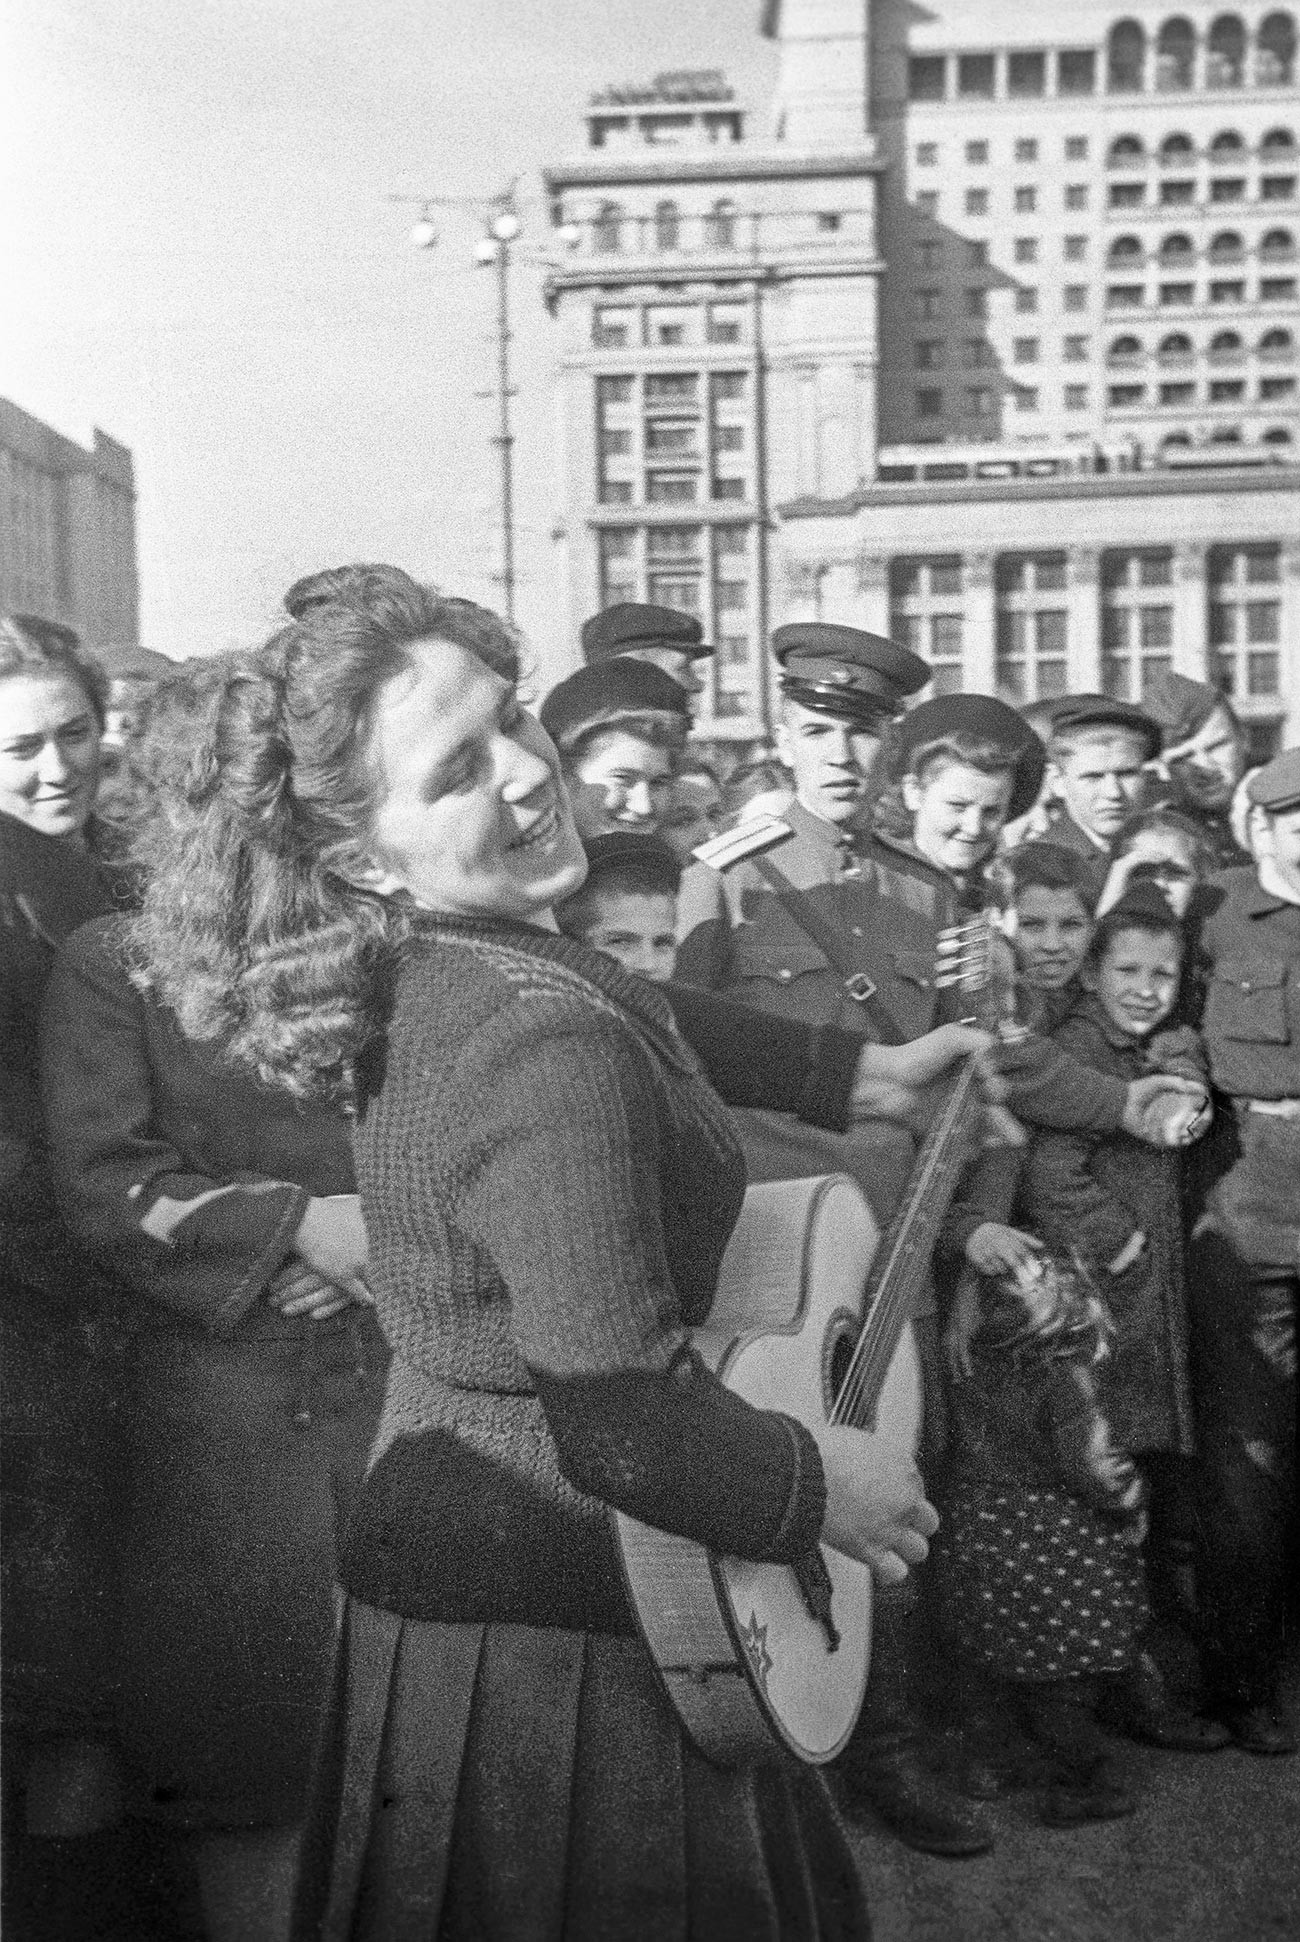 Moscou, 9 mai 1945. Résidents de la ville sur la place du Manège lors de la célébration de la victoire de l'Union soviétique sur l'Allemagne dans la Grande guerre patriotique